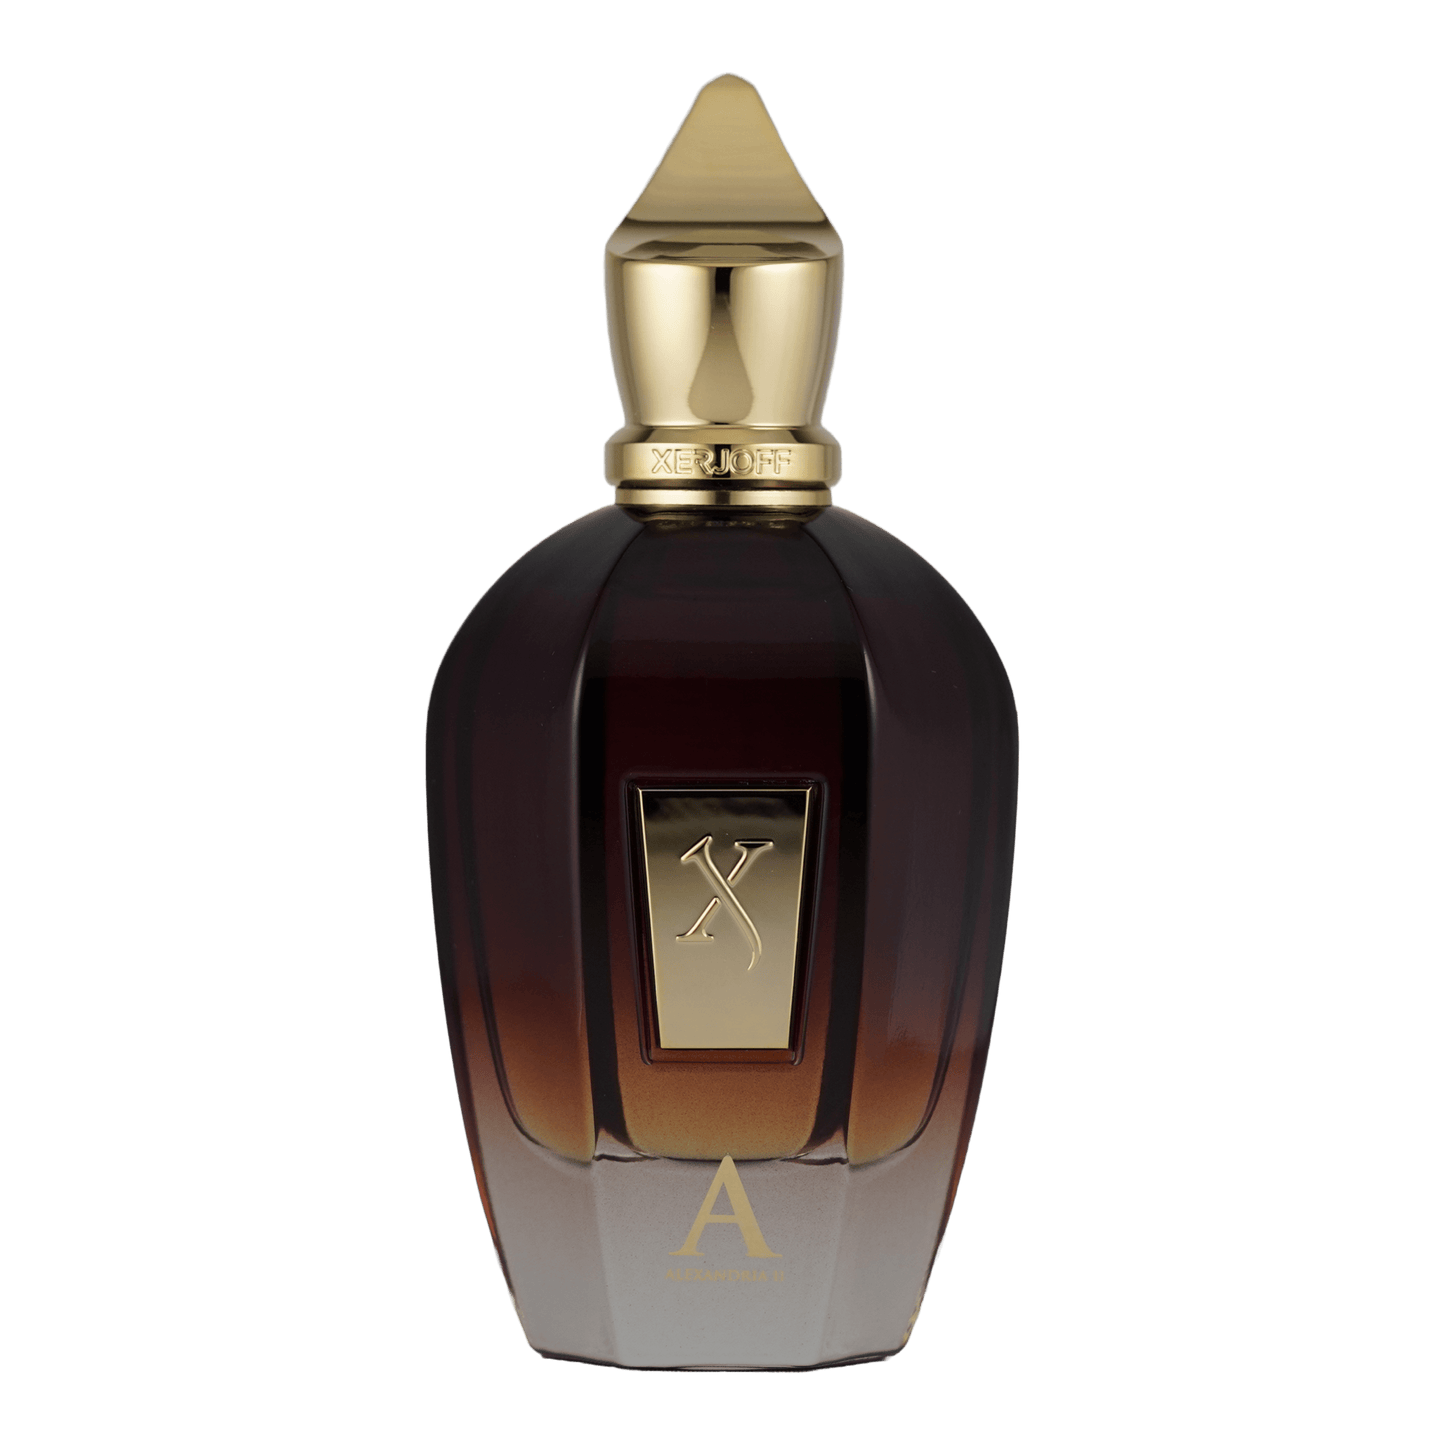 Ein Bild des Parfüms Alexandria 2 aus der Oud Stars Kollektion von Xerjoff angeboten als Duftprobe